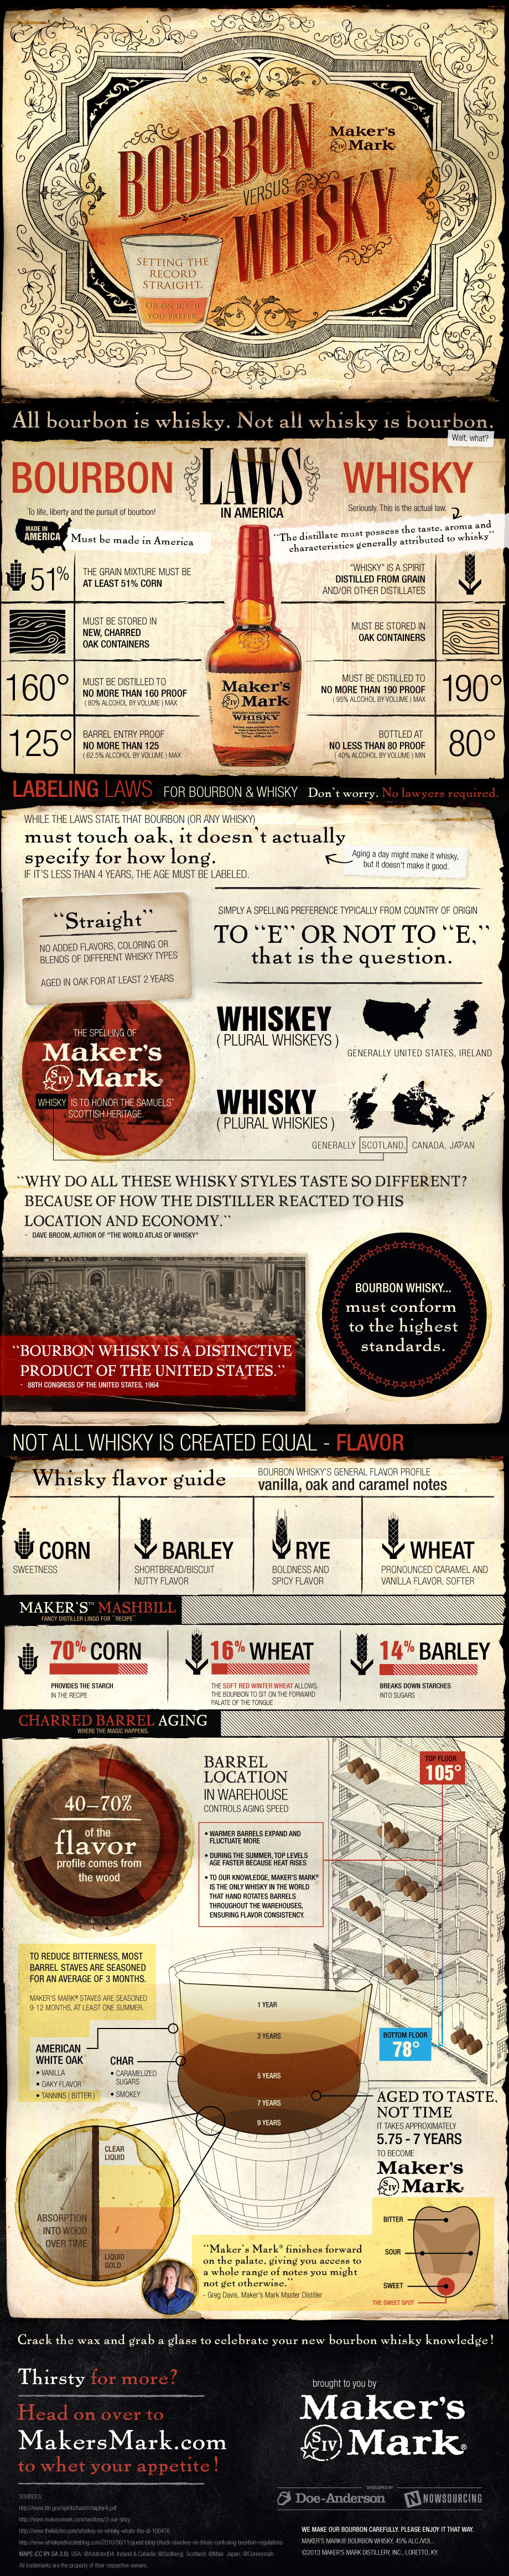 whisky-vs-bourbon